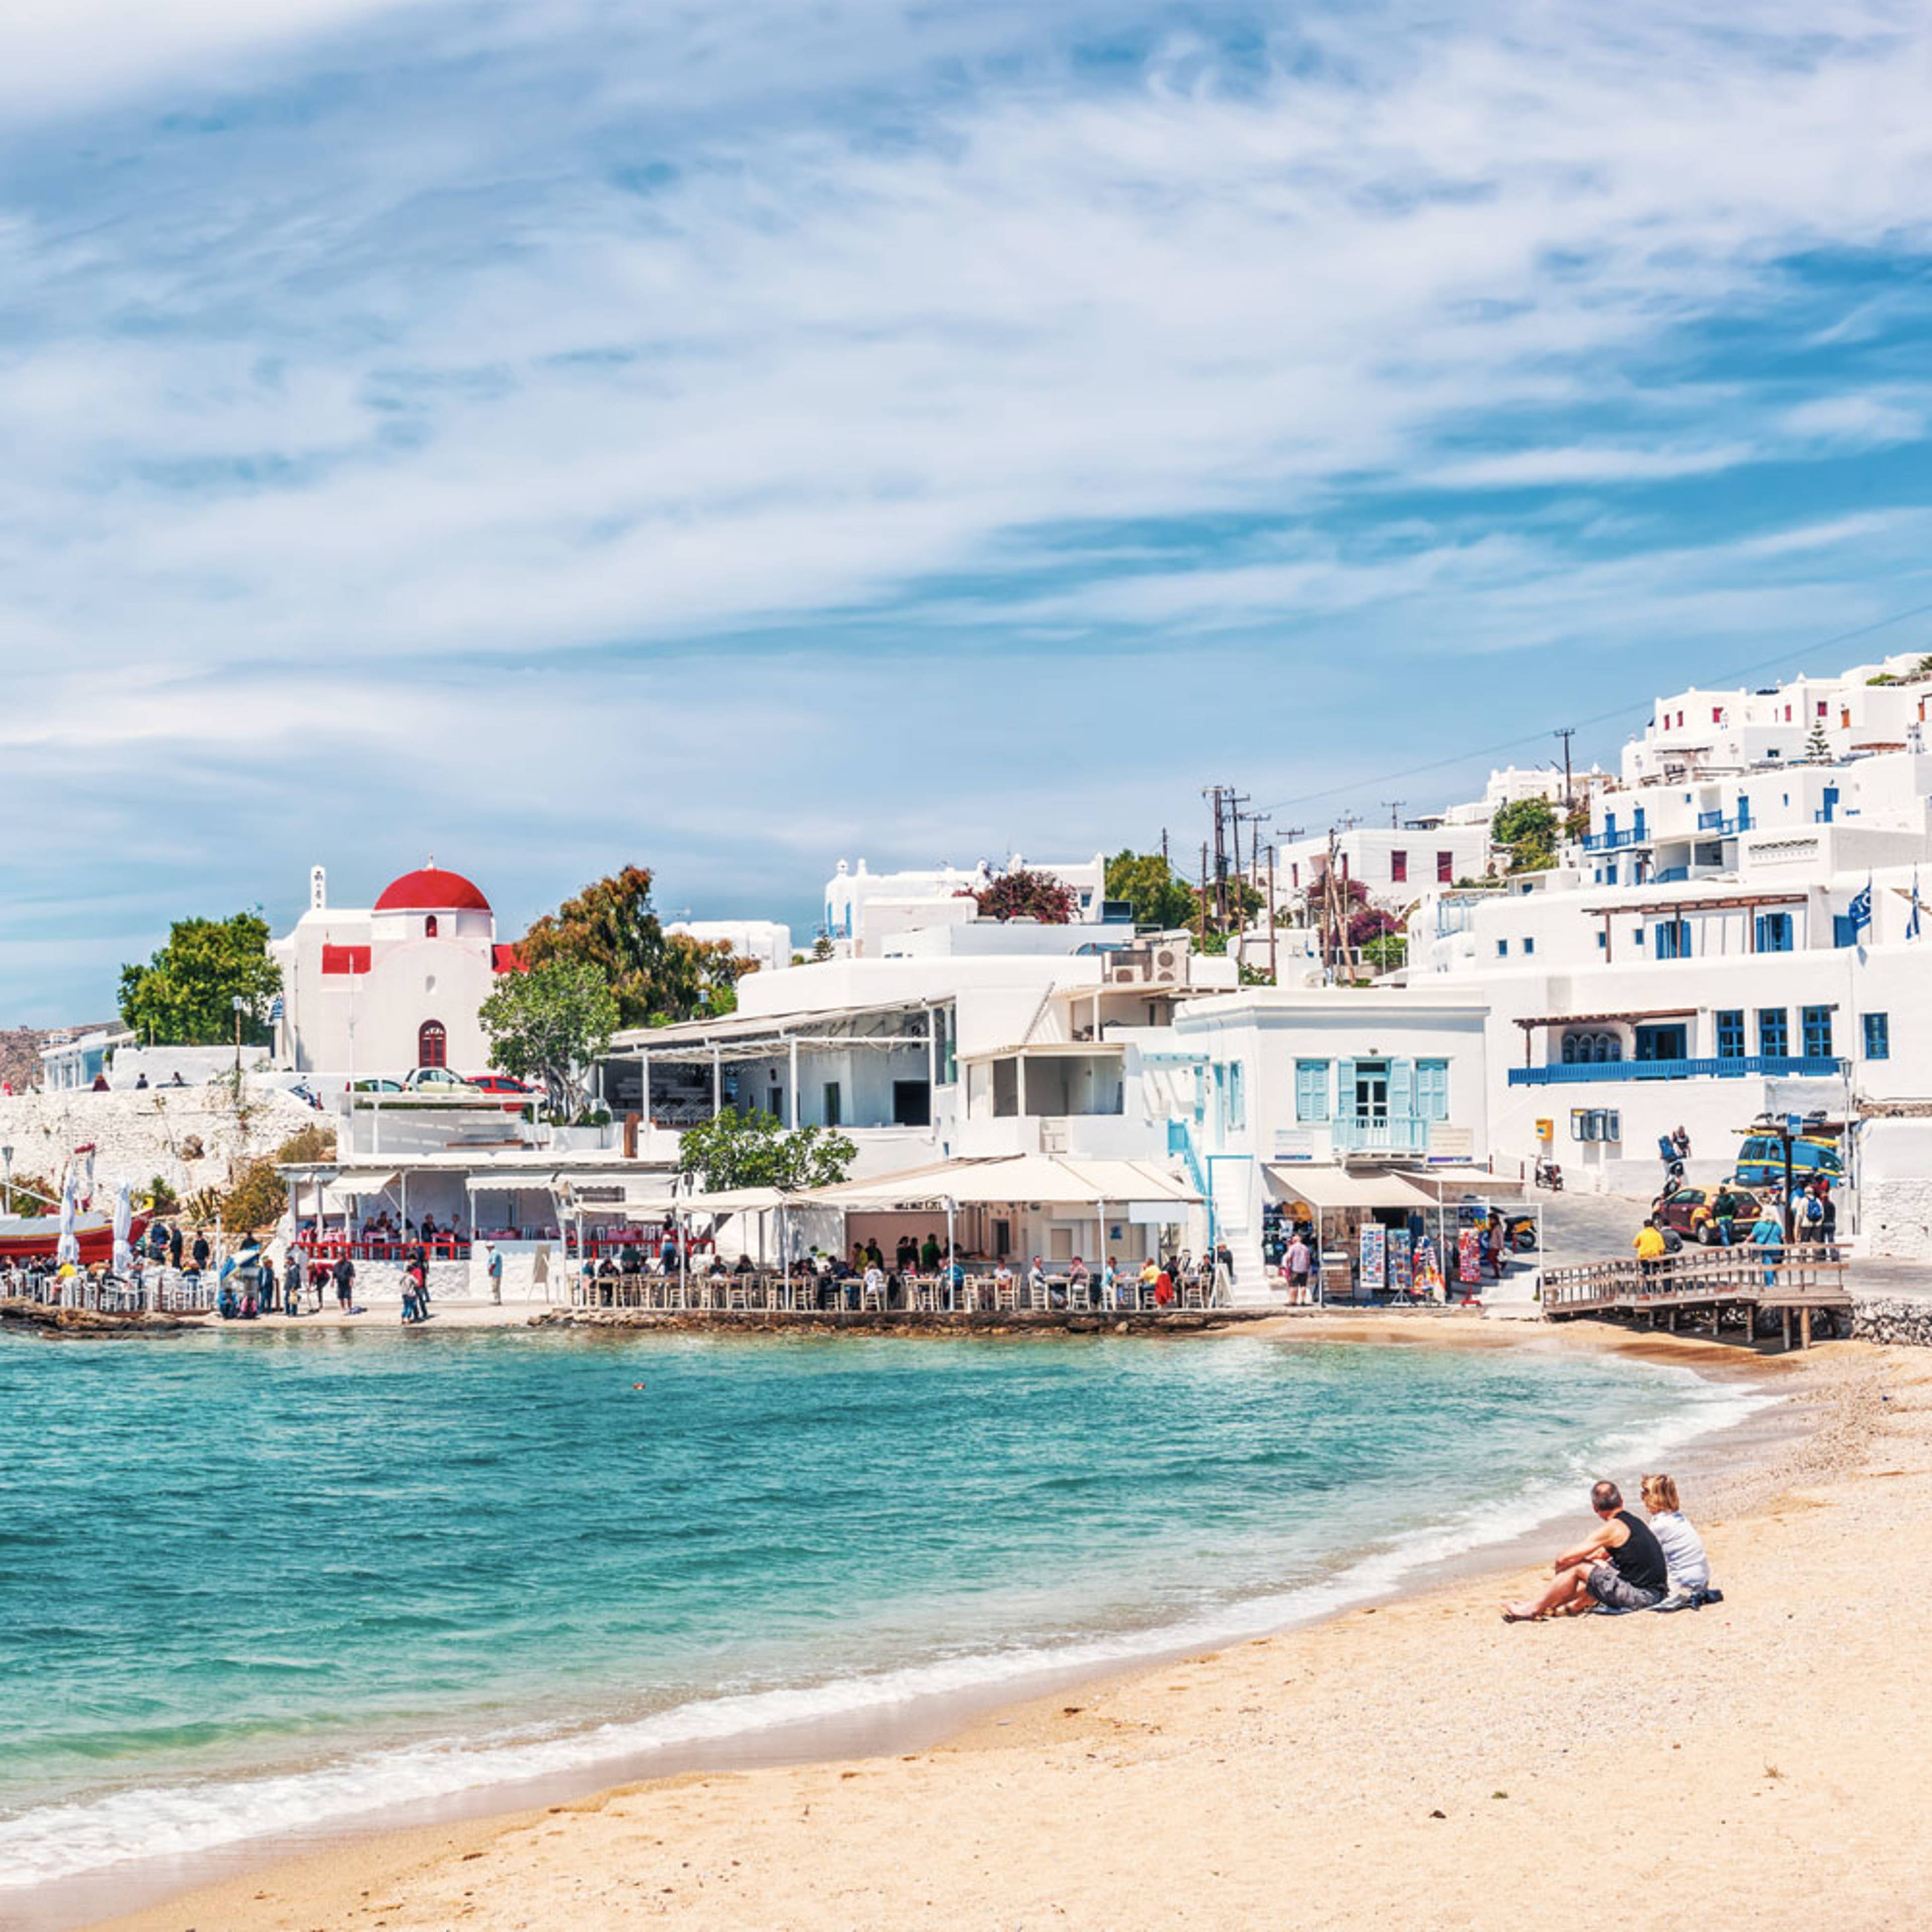 Meine Strand und Meer - Griechenland - Reise jetzt individuell gestalten